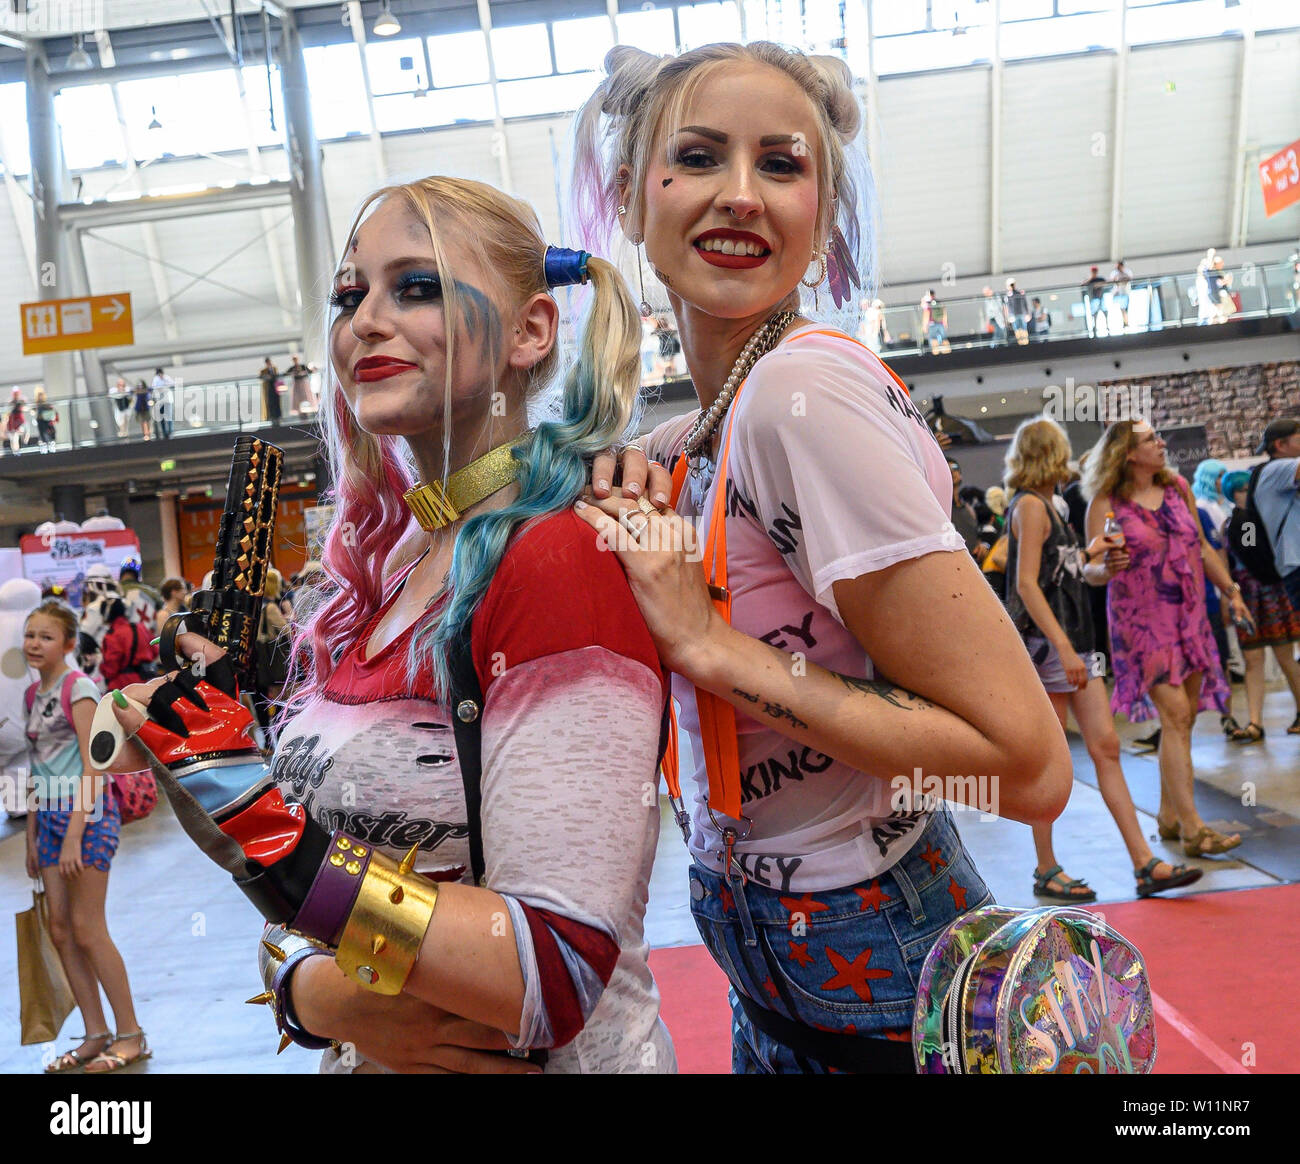 29. Juni 2019, Baden-Wuerttemberg, Stuttgart: Verkleidet als Harley Quinn,  Teilnehmer der Comic Messe "Comic Con Deutschland" in der Messe stehen.  Neben einem großen Händler Bereich mit zahlreichen Einkaufsmöglichkeiten  für Comic Sammler, die